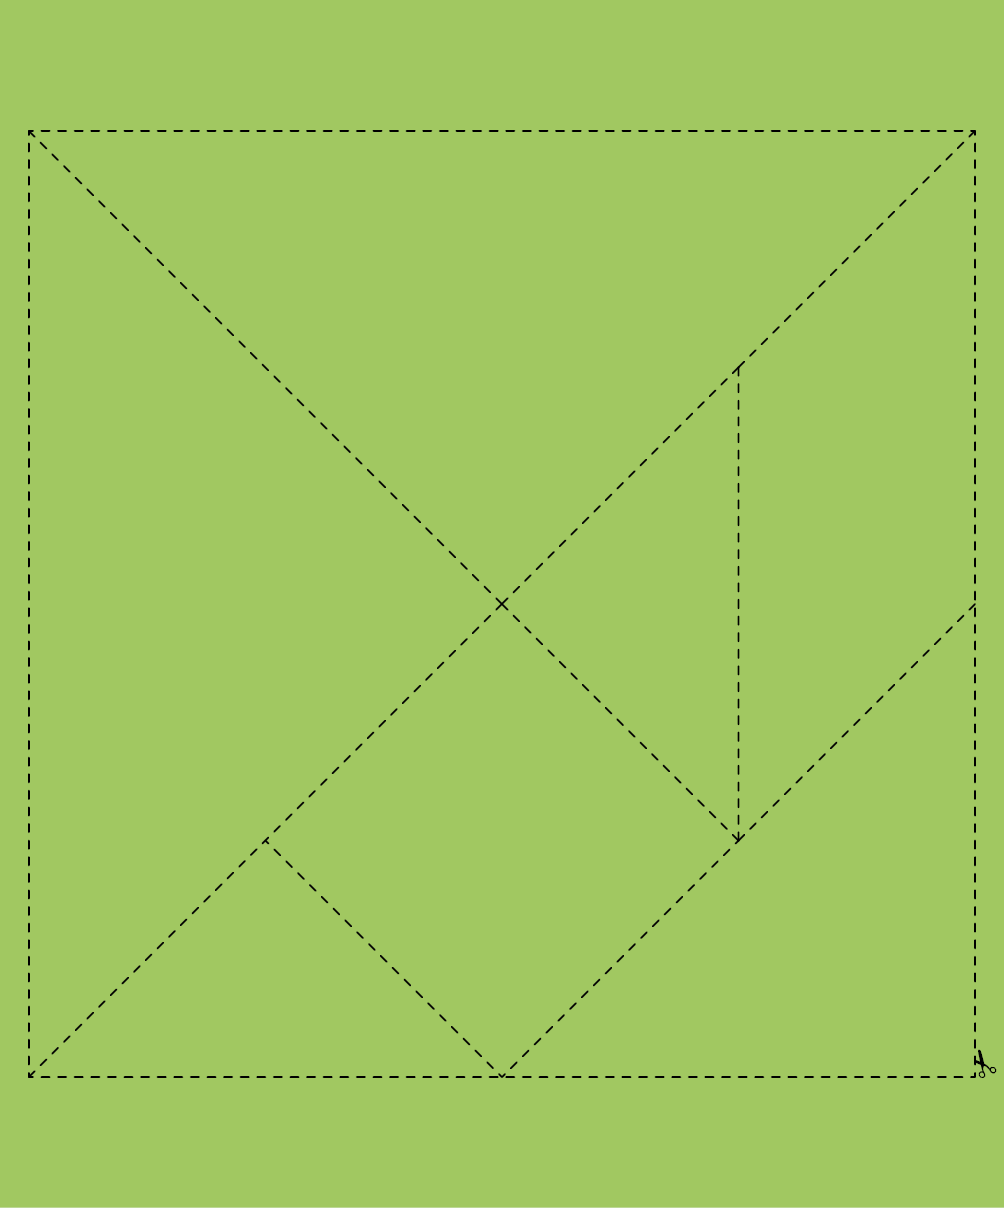 Imagem: Ilustração. Papel verde. No centro há figuras geométricas formando um quadrado com linhas pontilhadas em volta para recortar. Fim da imagem.